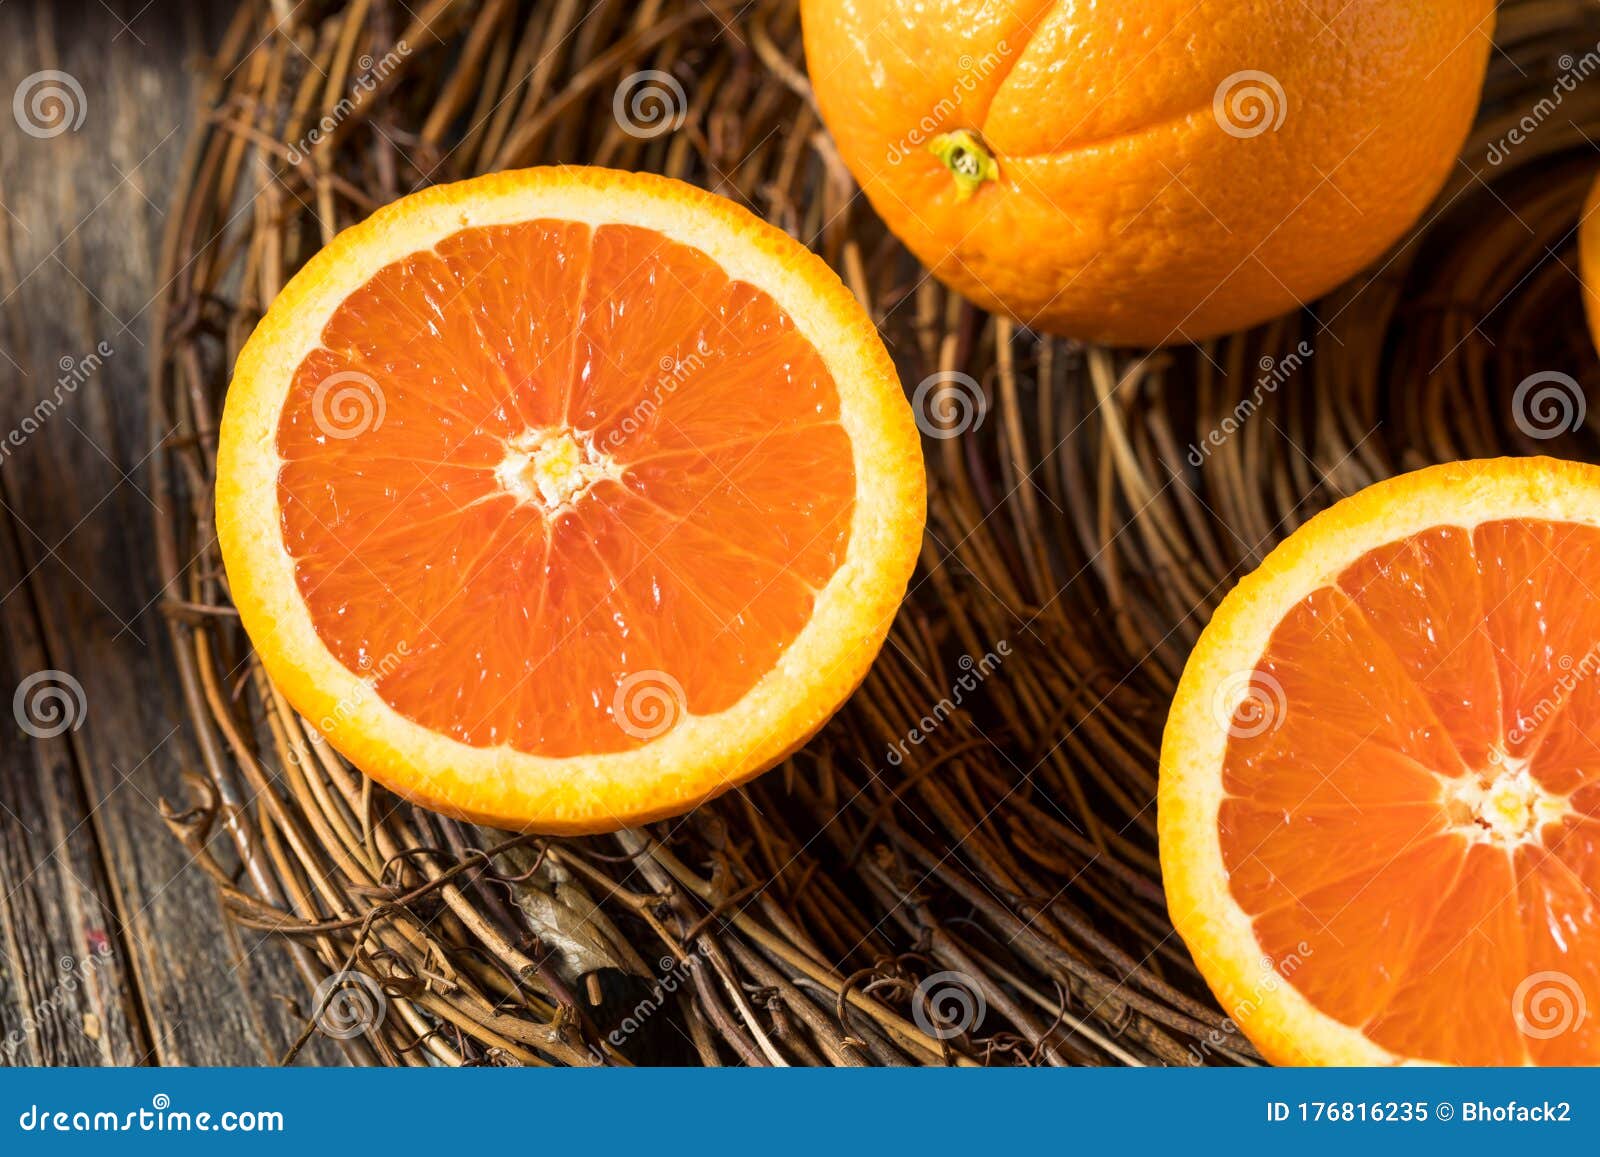 raw organic cara navel oranges